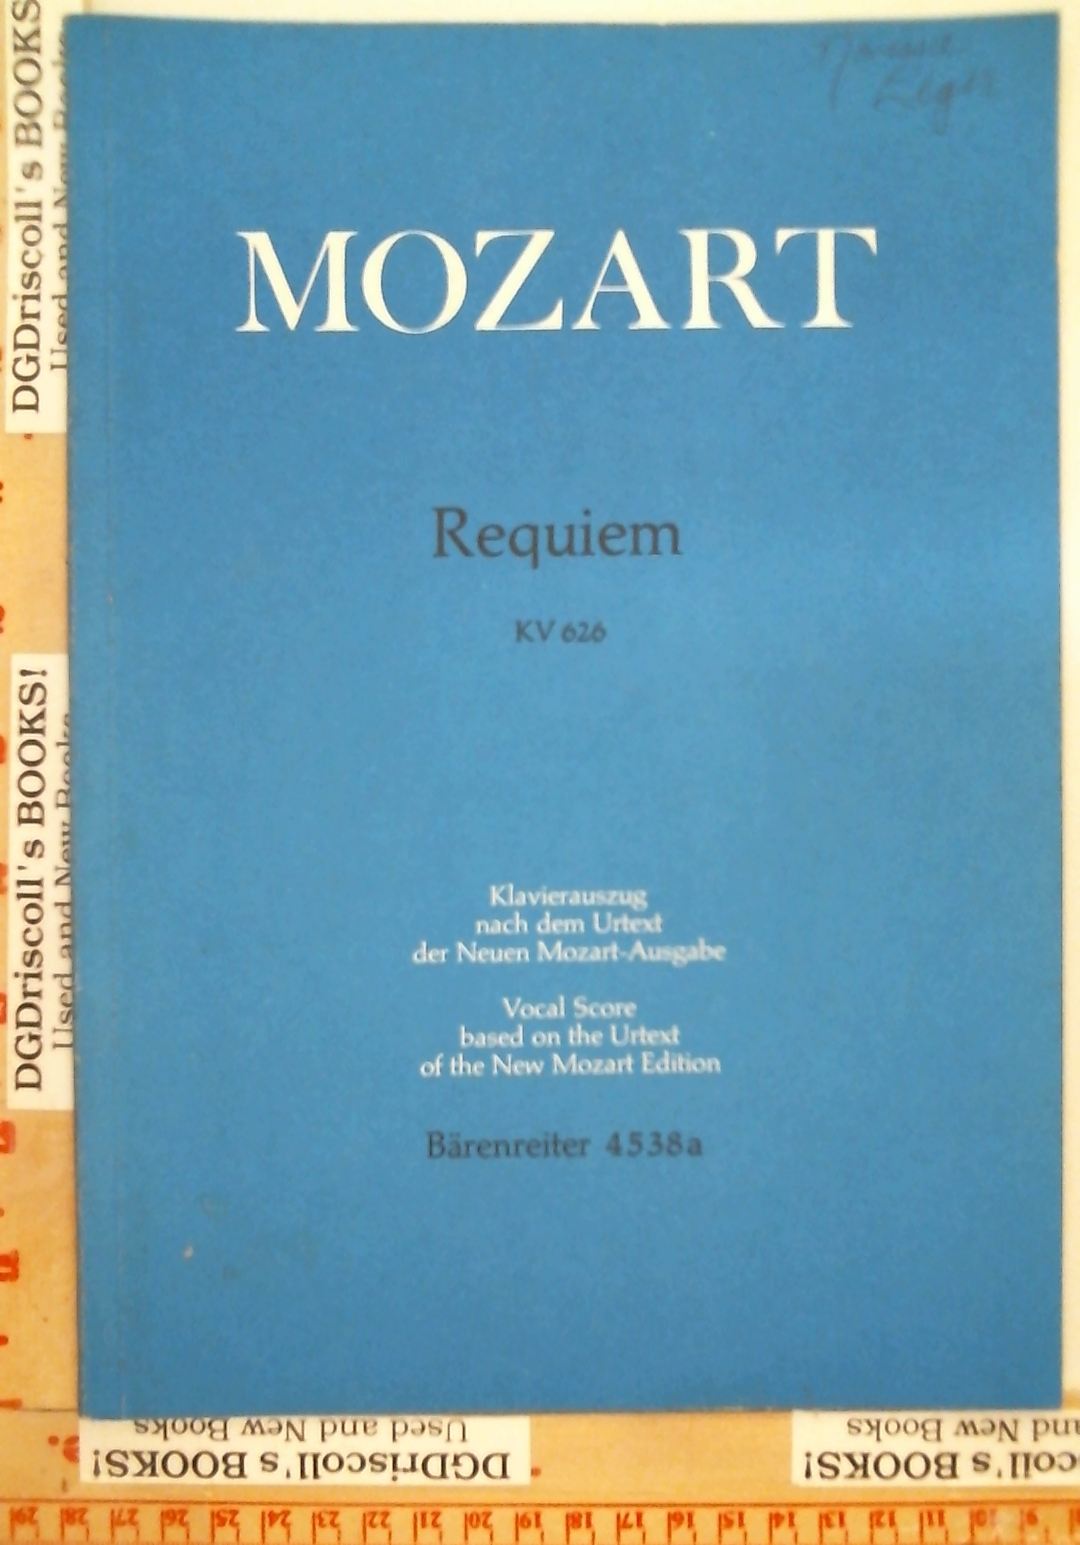 Mozart Requiem Barenreiter 4538a